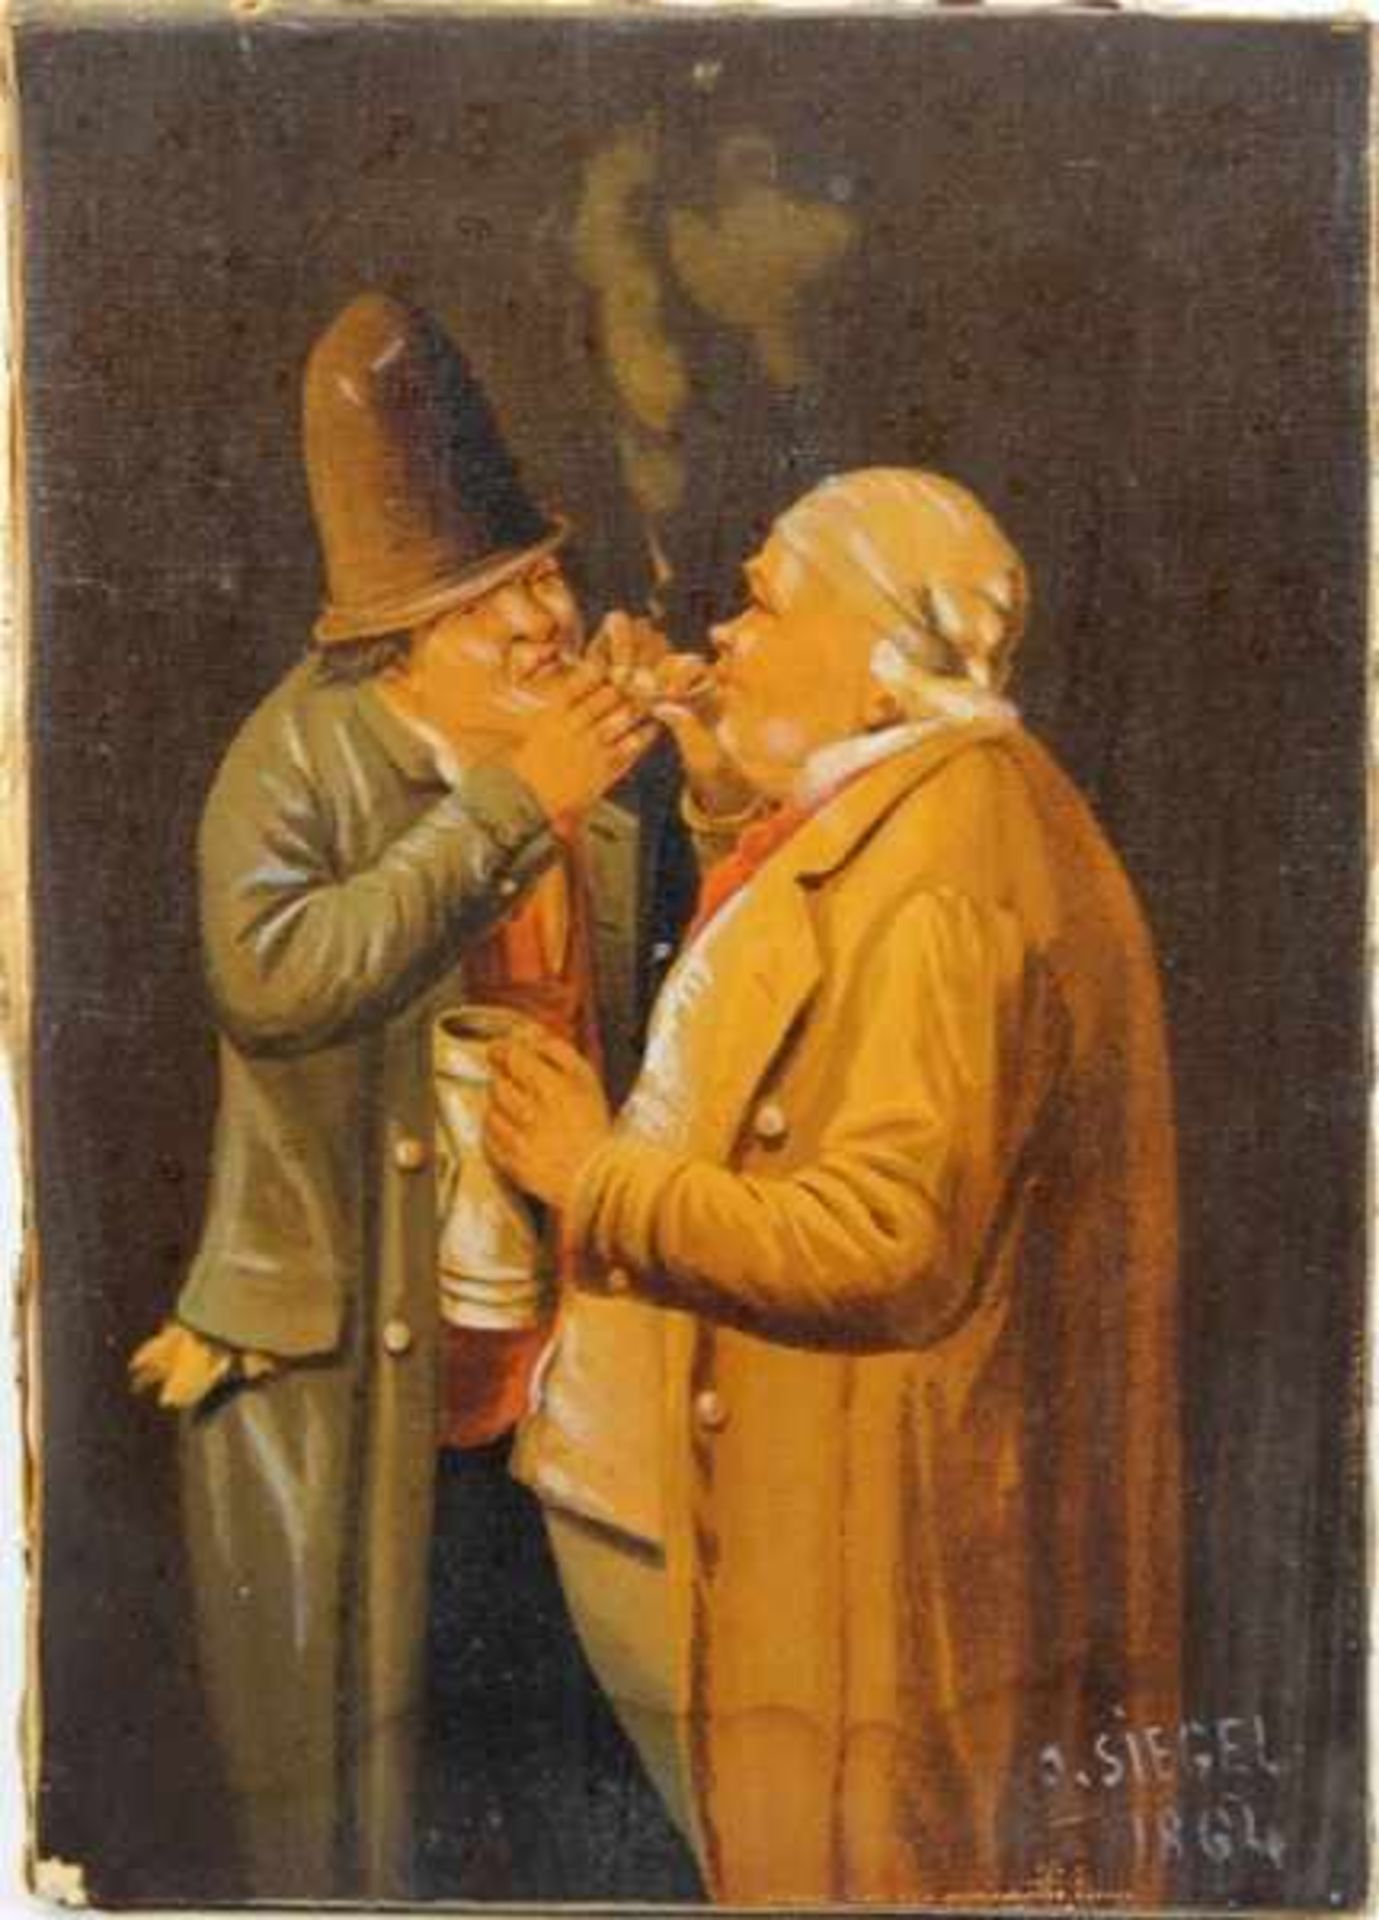 ÖldruckÖldruck, Motiv nach einem Gemälde, 2 rauchende Männer, unten rechts bez. Siegel 1864, H.